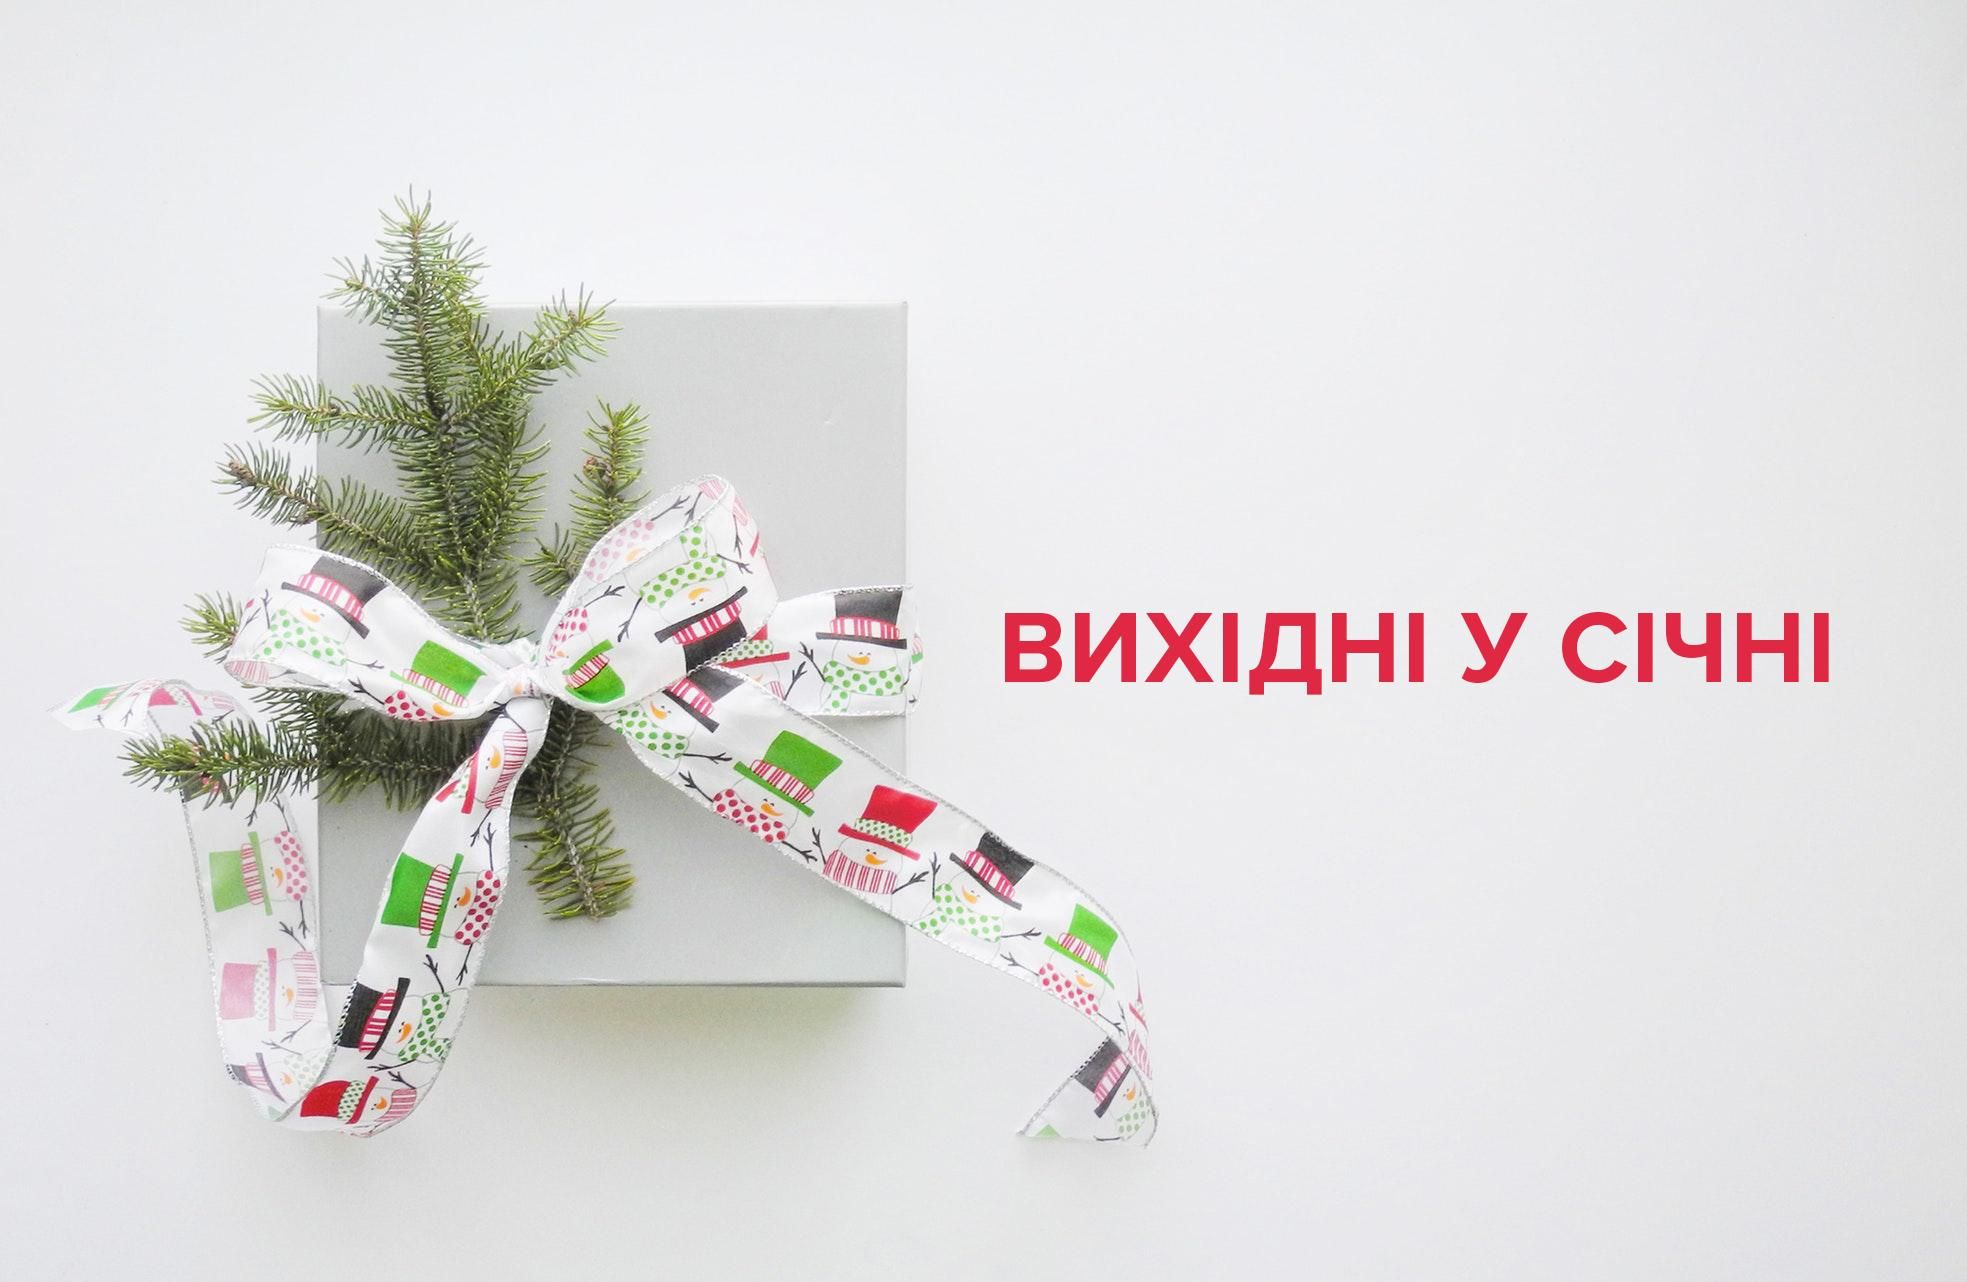 Выходные в январе 2019 Украина - календарь праздников и выходных